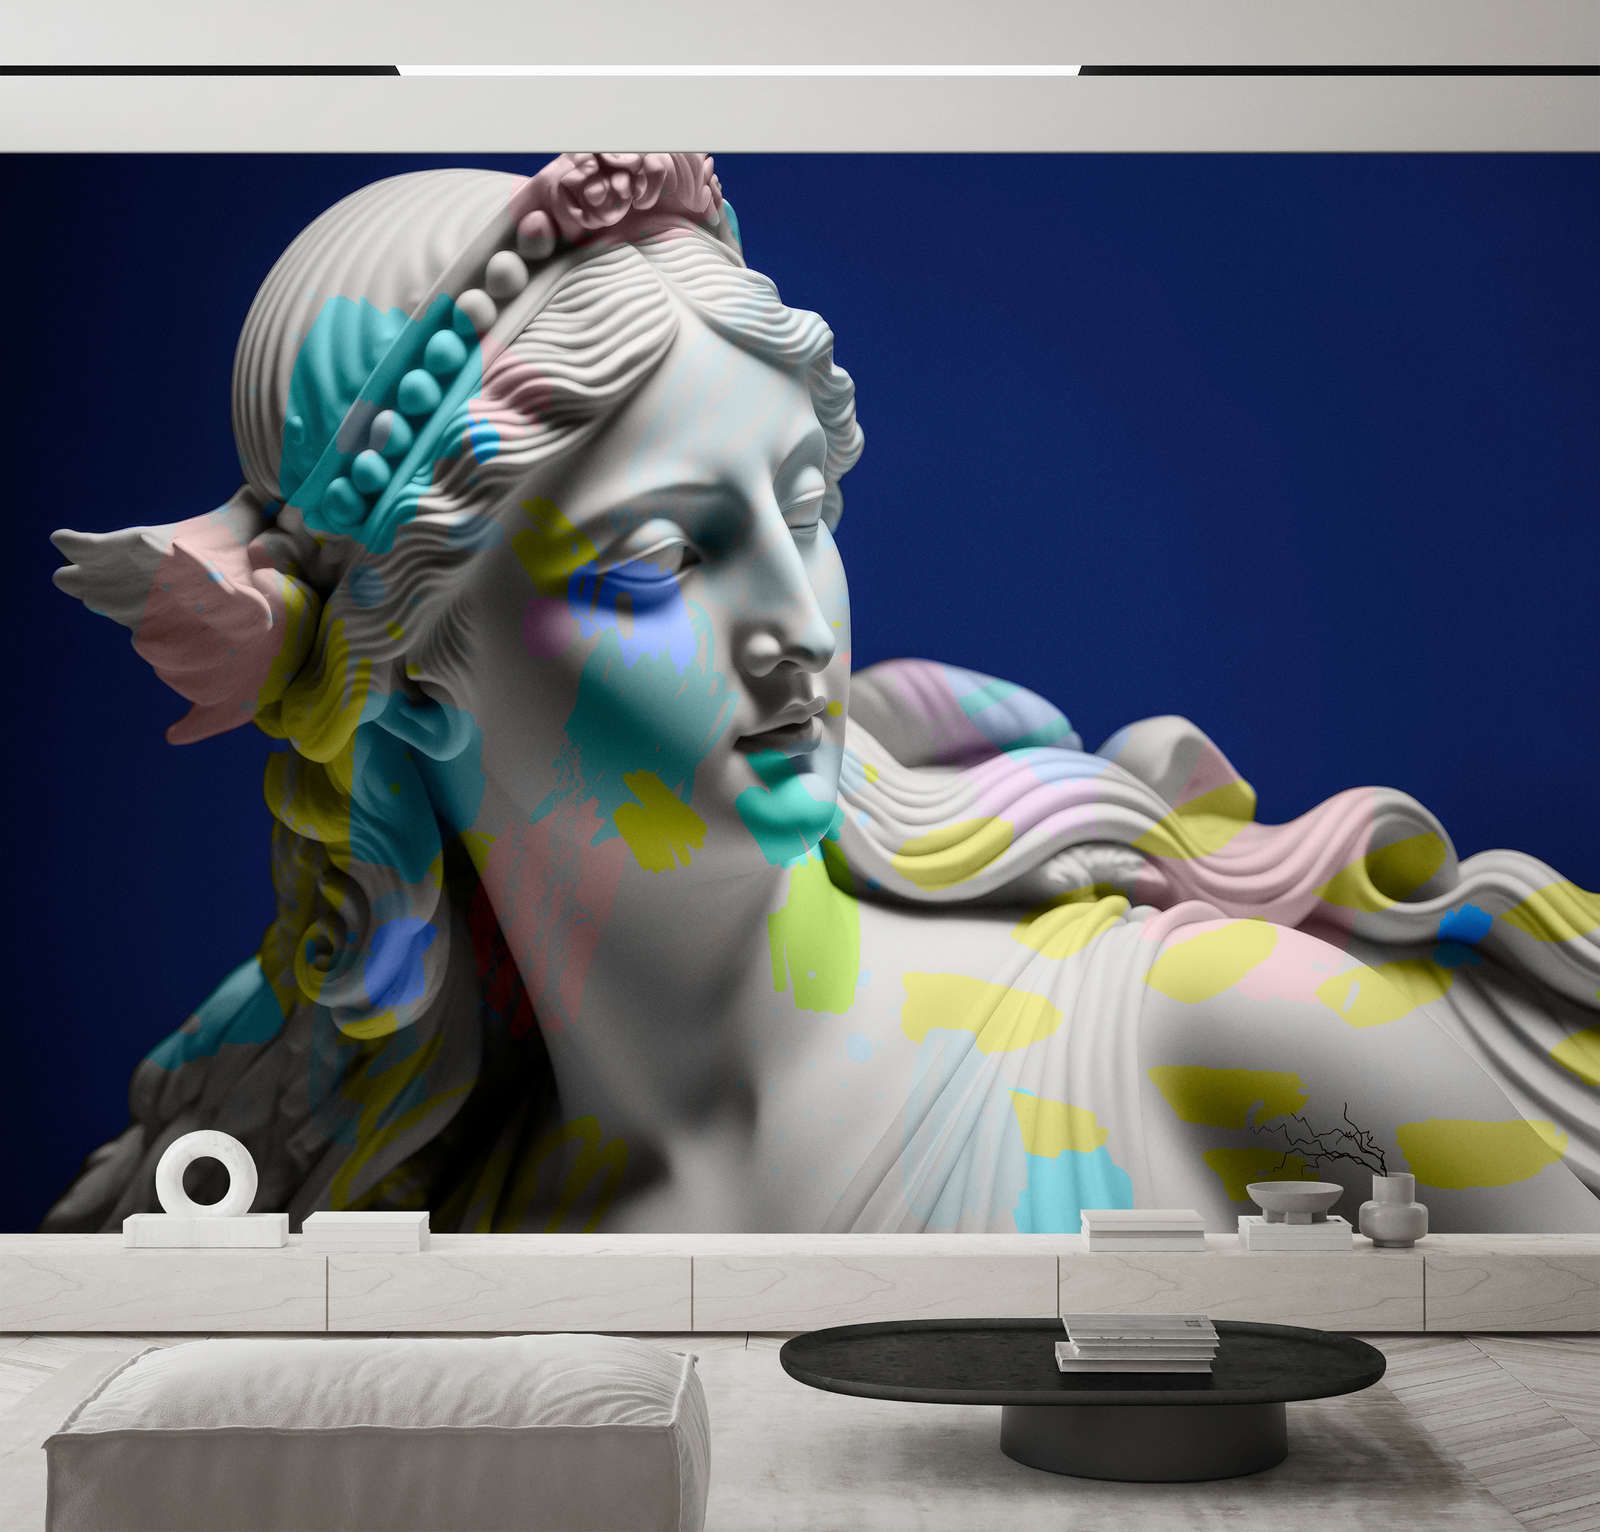             Digital behang »anthea« - vrouwelijk beeld met kleurrijke accenten - Gladde, licht parelmoerglanzende vliesstof
        